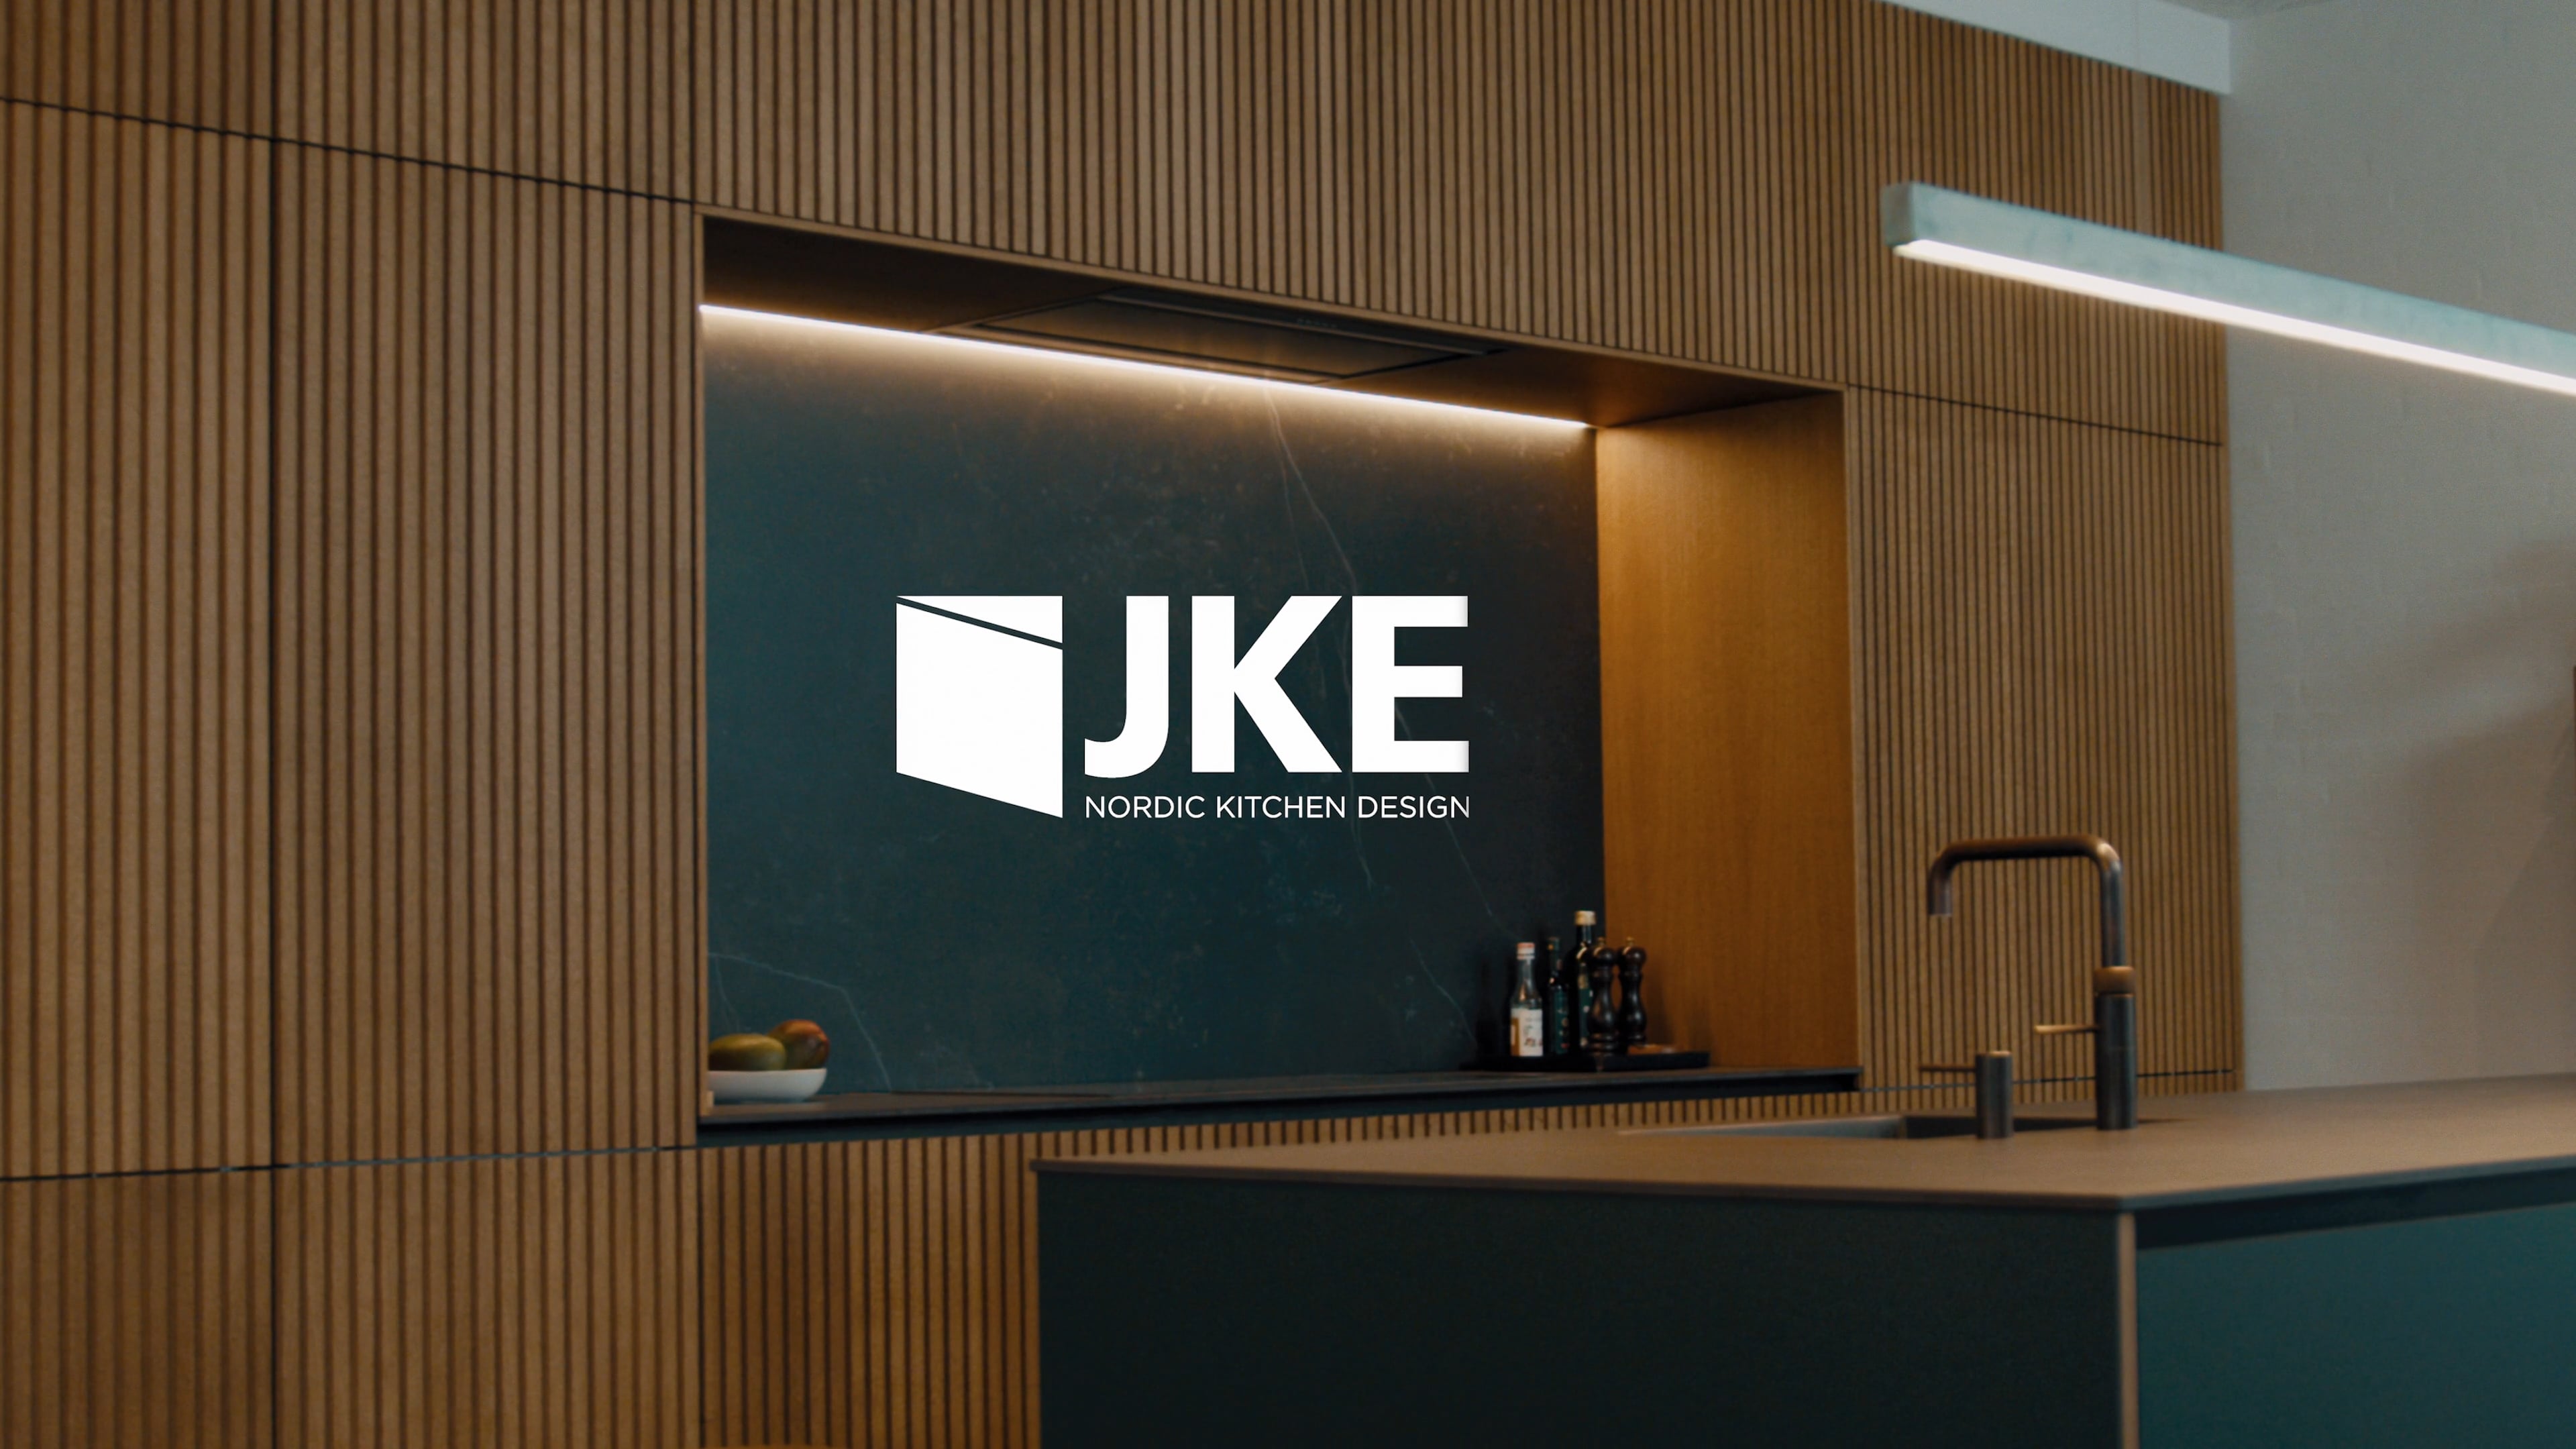 Image from case: JKE Design